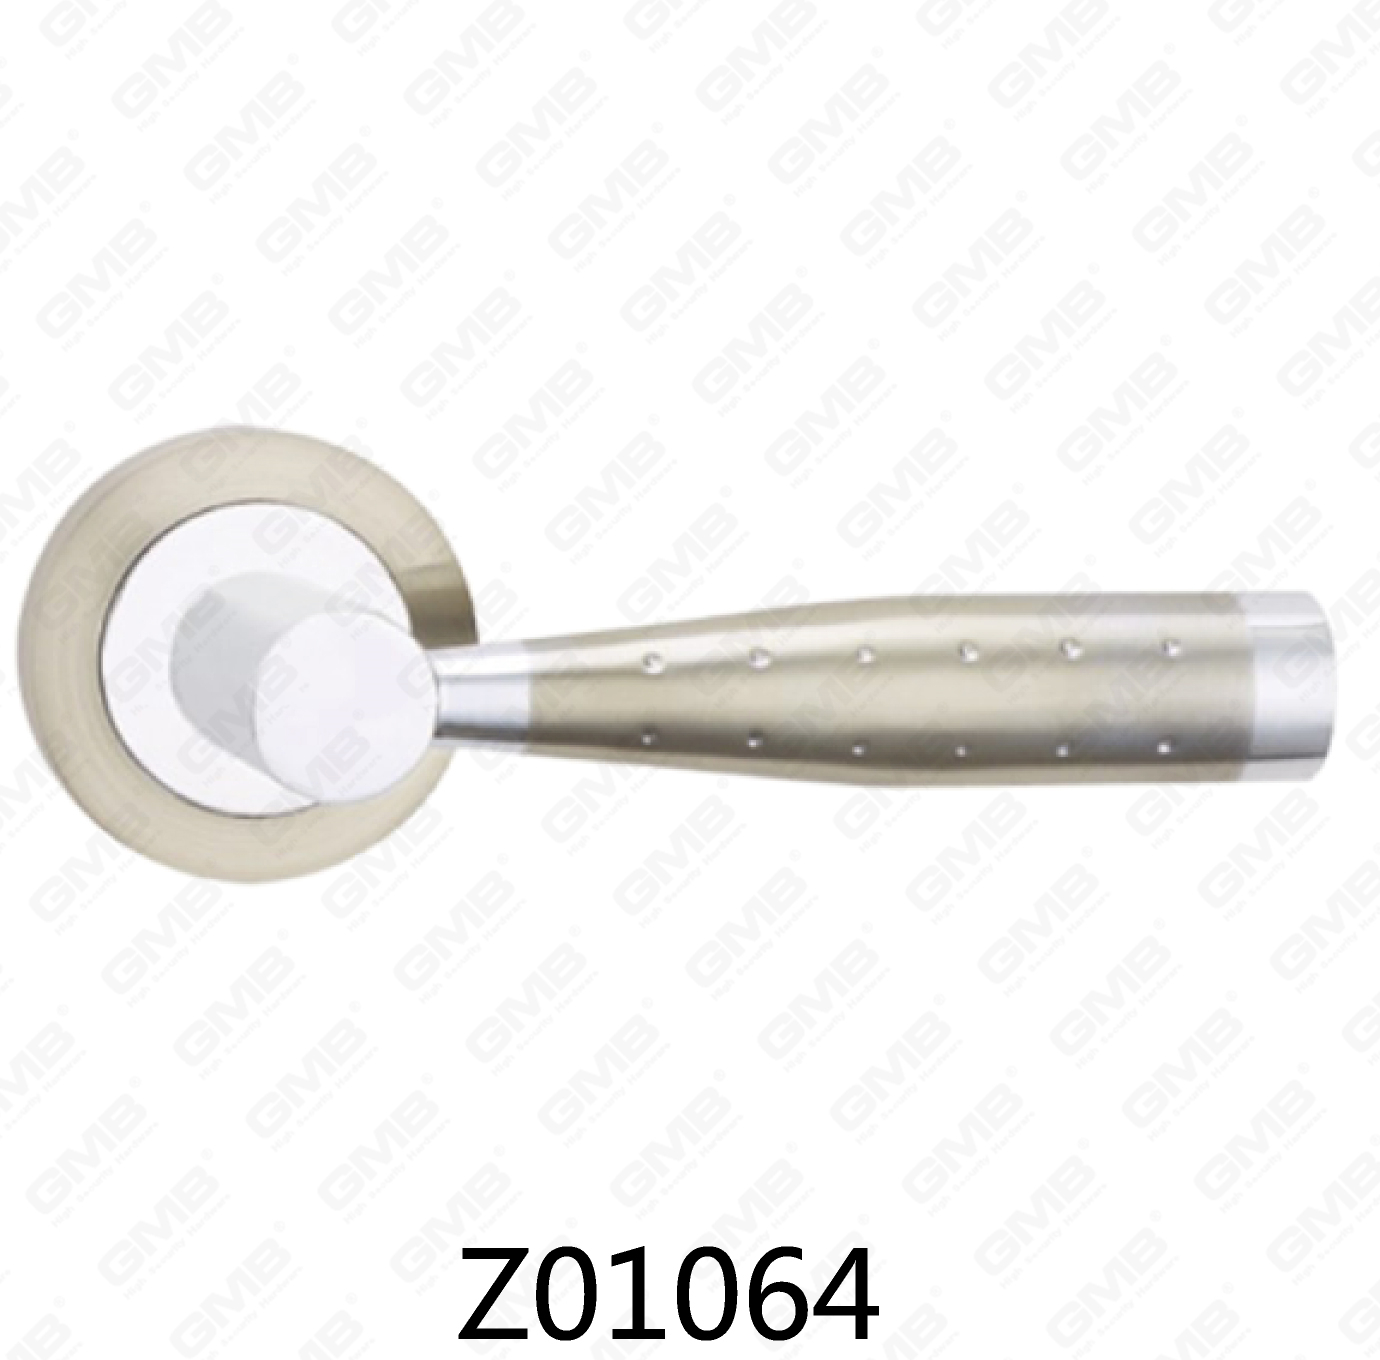 ידית דלת רוזטה מסגסוגת אבץ של Zamak עם רוזטה עגולה (Z01064)